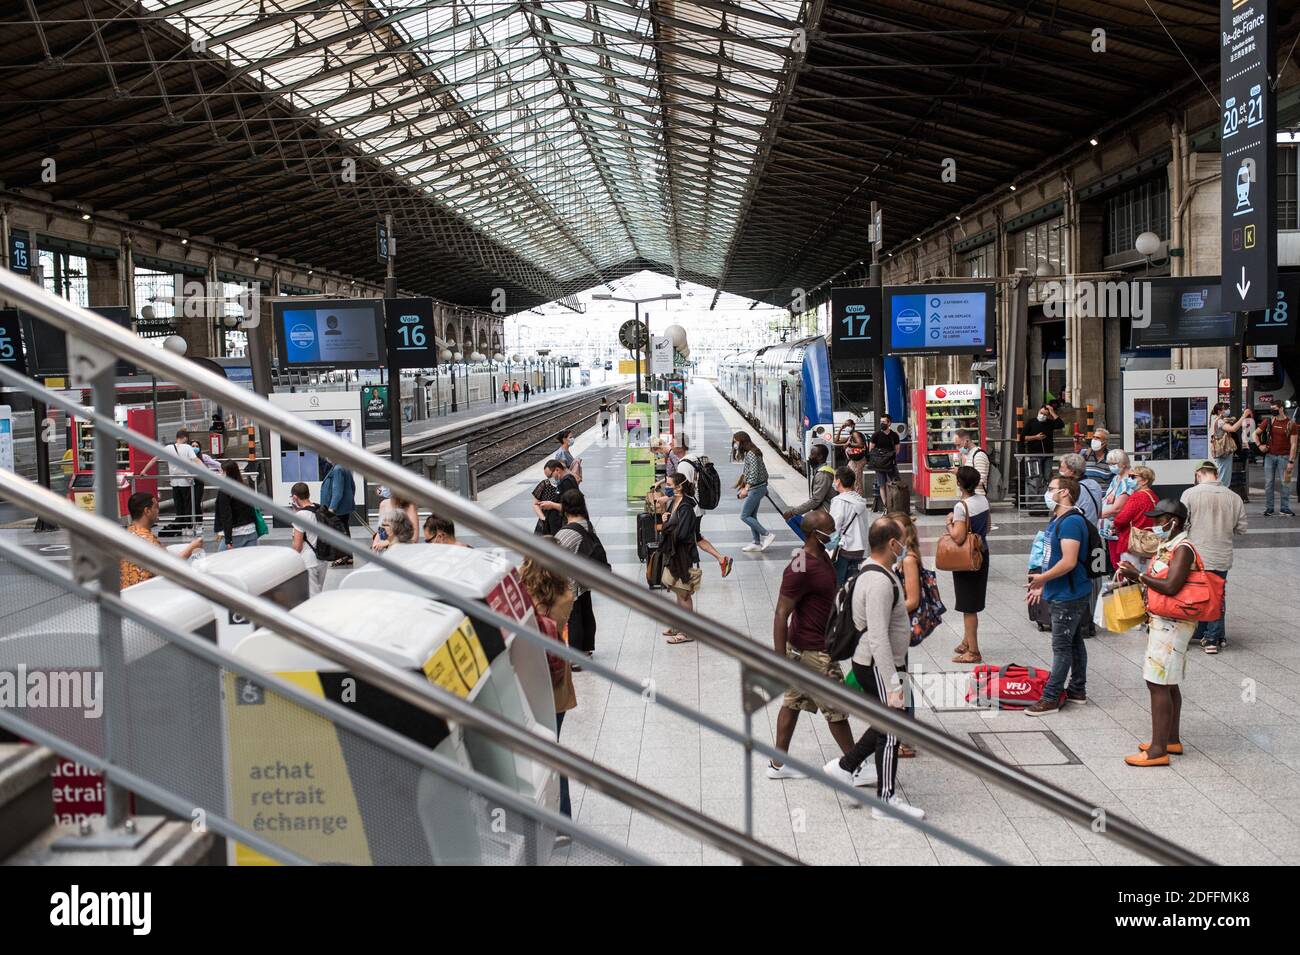 Les gens marchent à la gare du Nord, à Paris, France, le 14 août 2020 pendant la pandémie du COVID-19 (nouveau coronavirus). Photo de Julie Sebadelha/ABACAPRESS.COM Banque D'Images